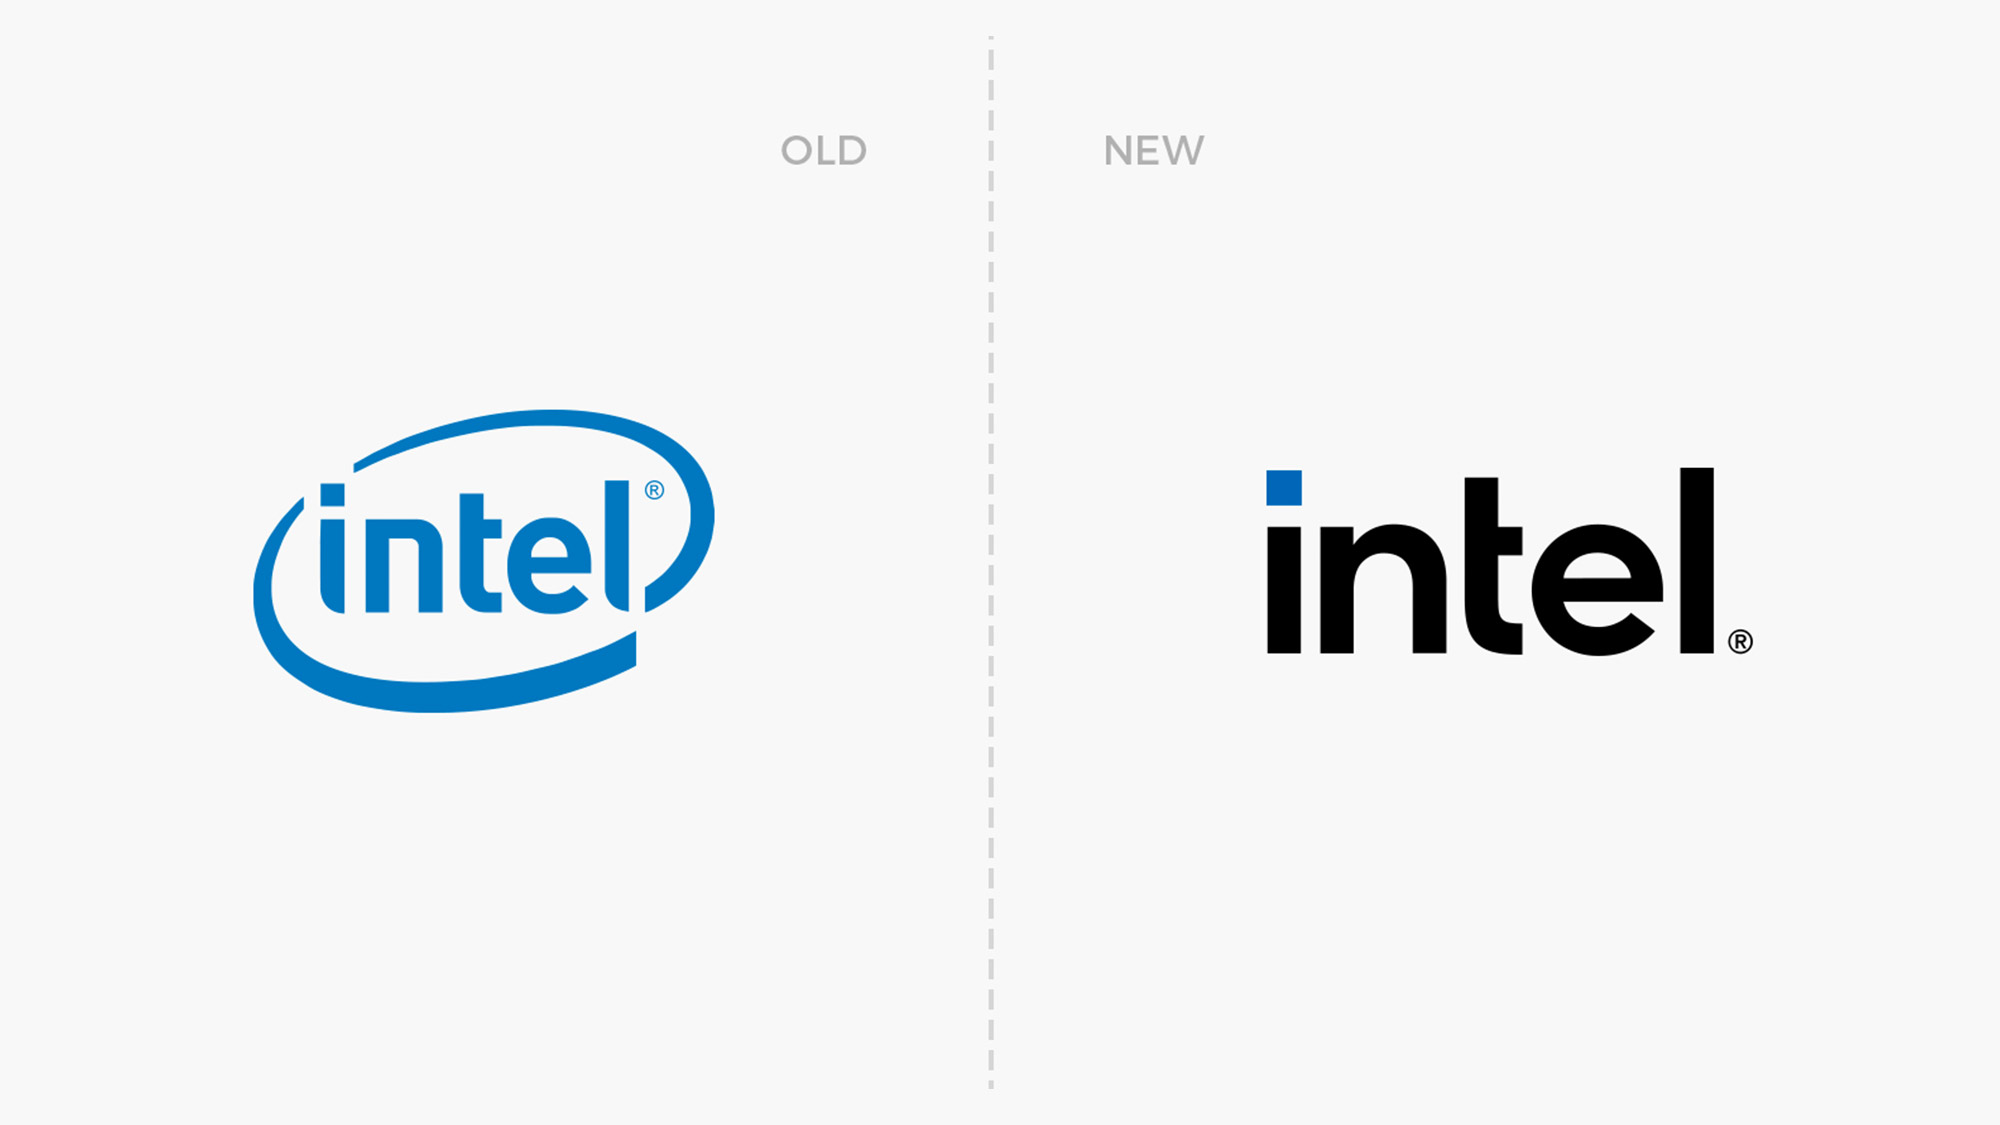 intel英特尔新旧logo对比/